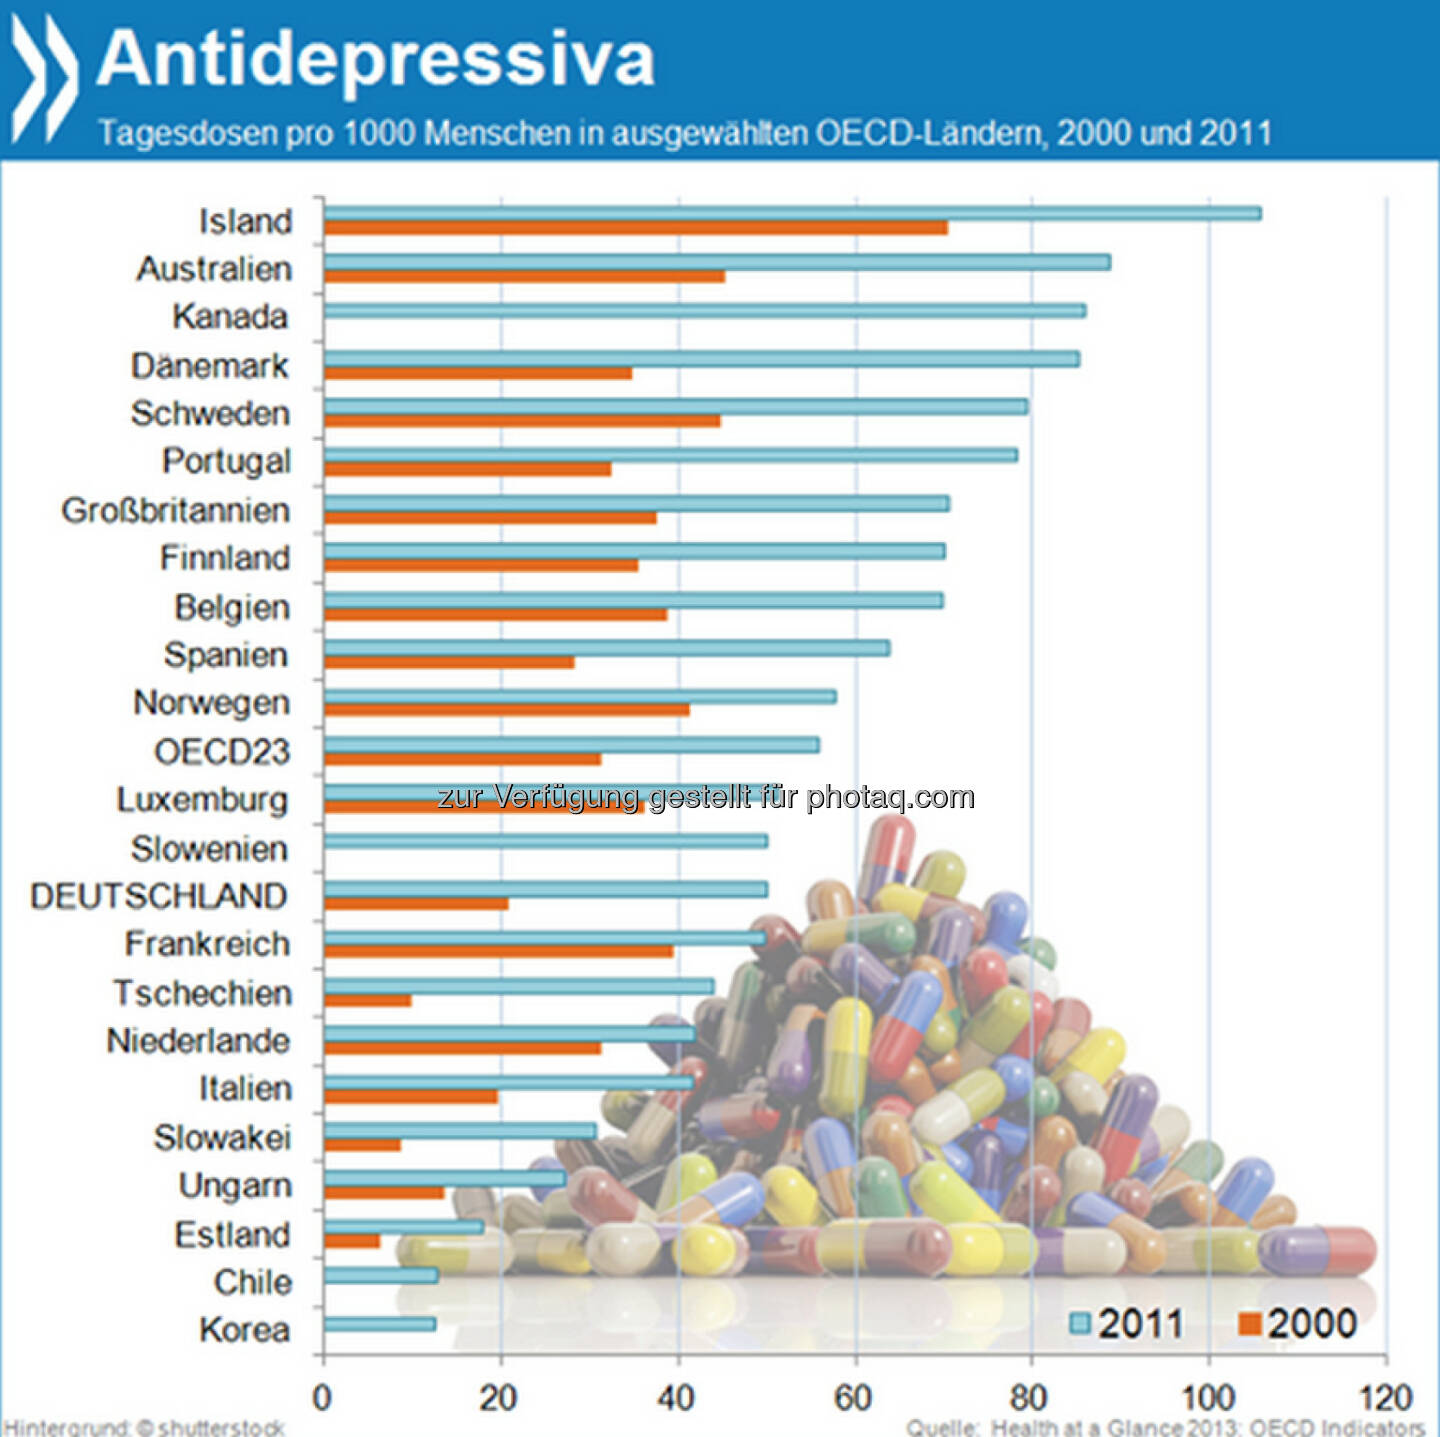 Hard times?! Der Verbrauch von Antidepressiva in der OECD hat sich seit dem Jahr 2000 fast verdoppelt. Mit 106 Tagesdosen auf 1000 Menschen schlucken Isländer die meisten Stimmungsaufheller. Deutsche liegen mit 50 Tagesdosen leicht unter dem Durchschnitt.

Mehr unter http://bit.ly/1bmGJyV (Health at a Glance, S.103)